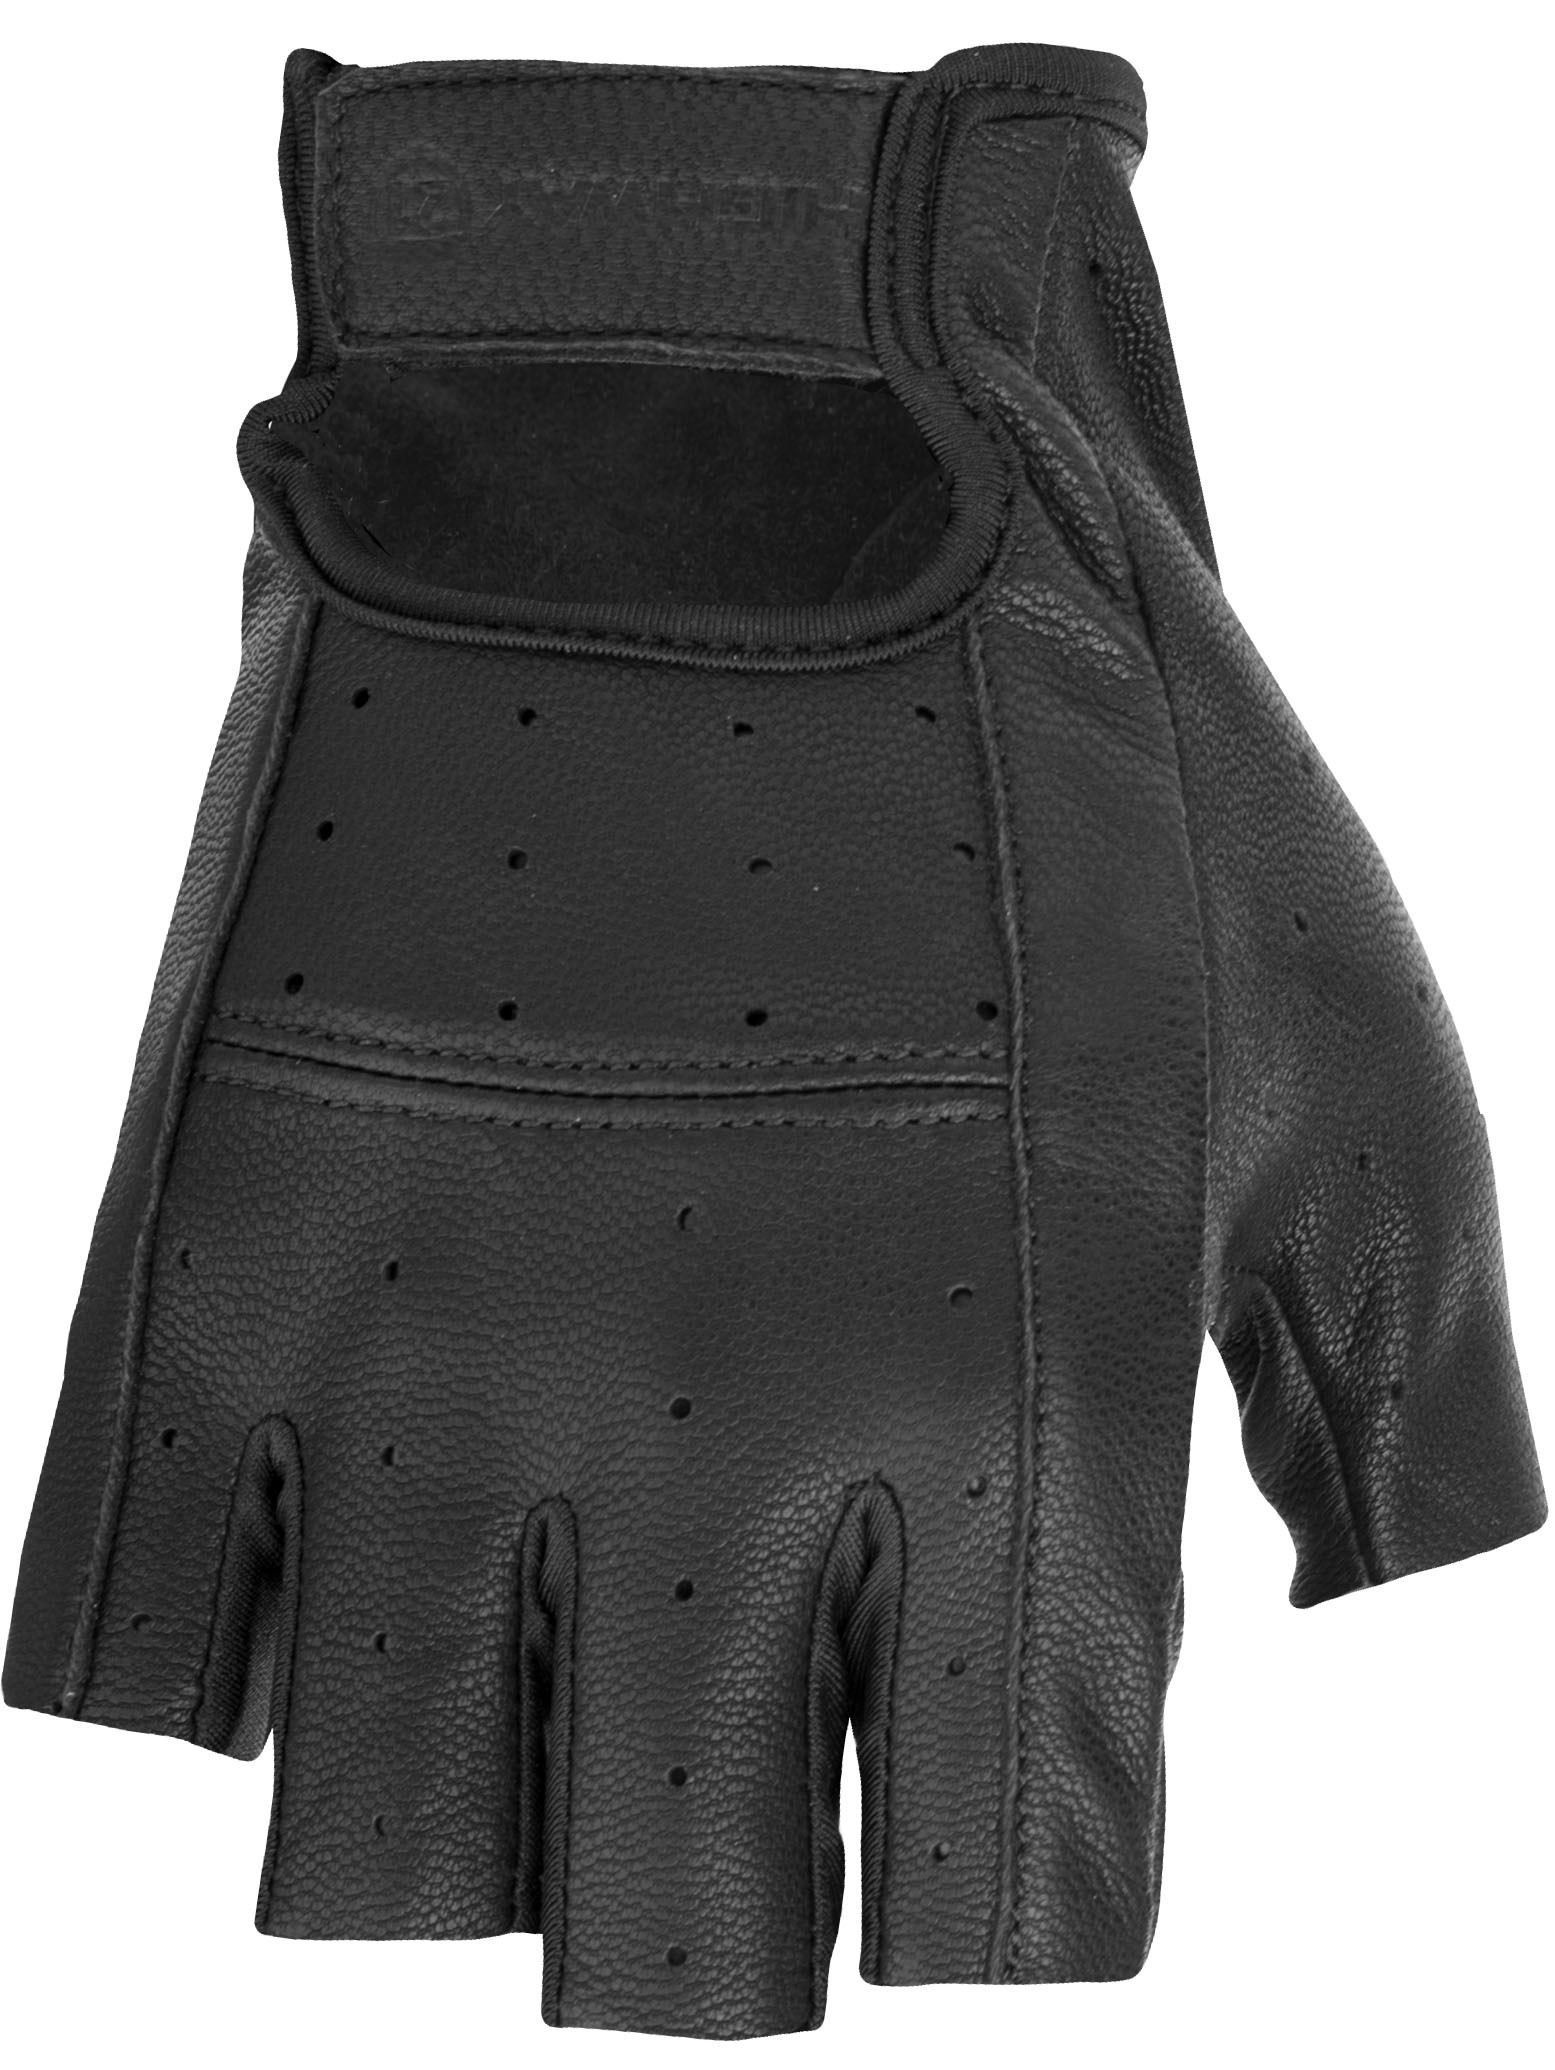 Highway 21 - Ranger Gloves - #5841 489-0030~2